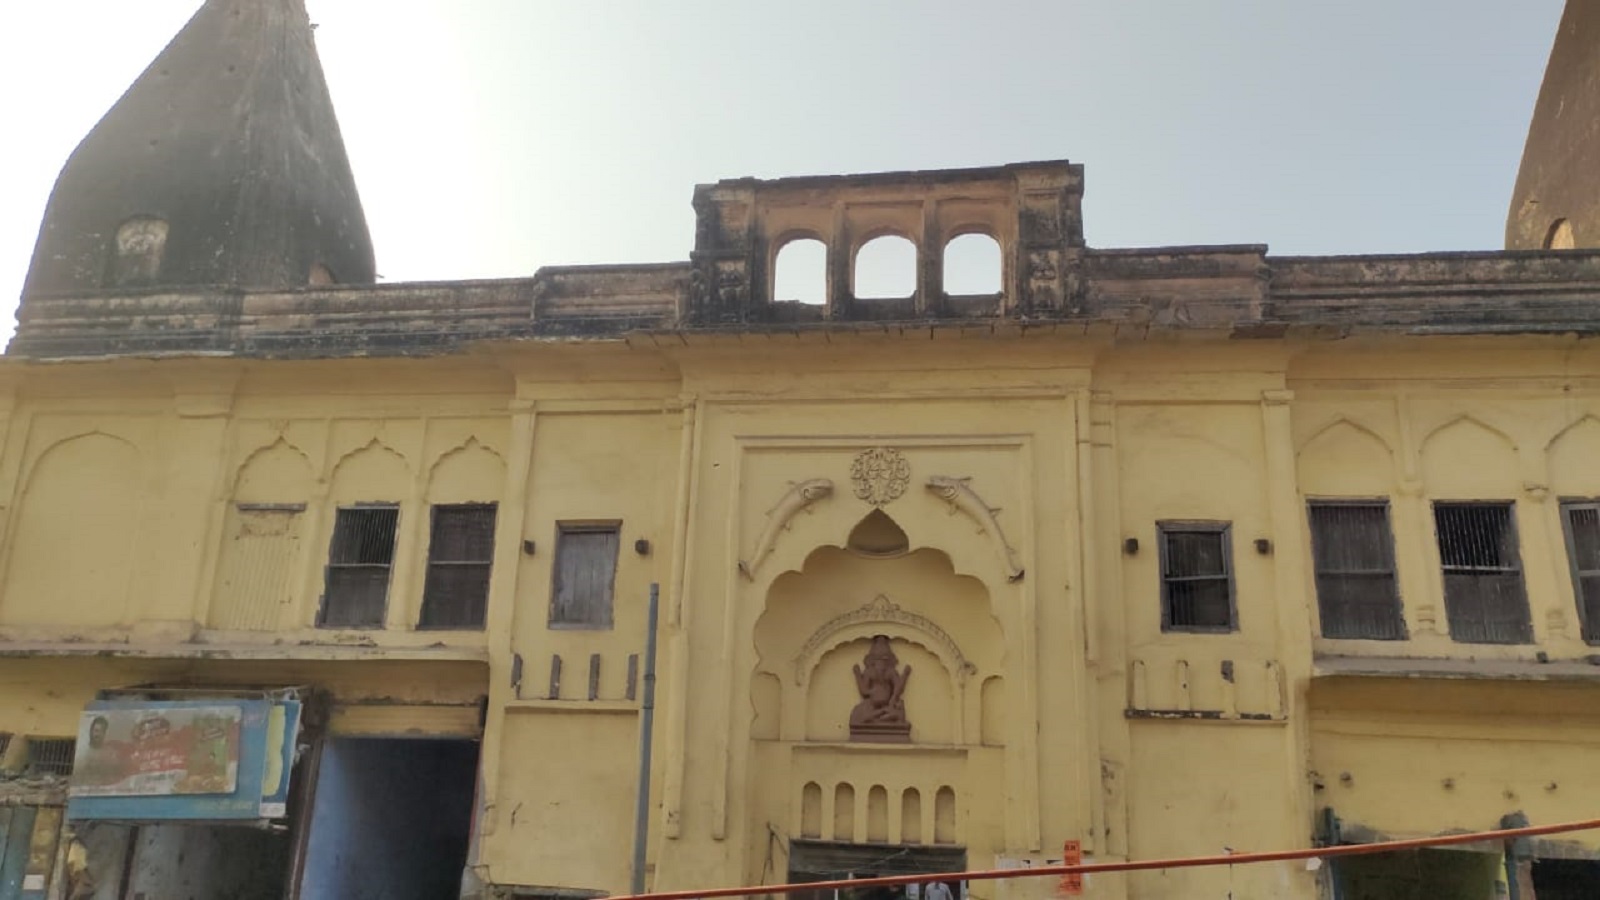  वशिष्ठ मंदिर के महंत गिरीश त्रिपाठी बताते हैं कि अयोध्या में बहुत ही पुराने मठ और मंदिर हैं जो ब्रिटिश शासन से भी पहले की है, अब उन मंदिरों के चिन्ह को दोबारा उस स्वरूप में नहीं देखा जा सकता है.